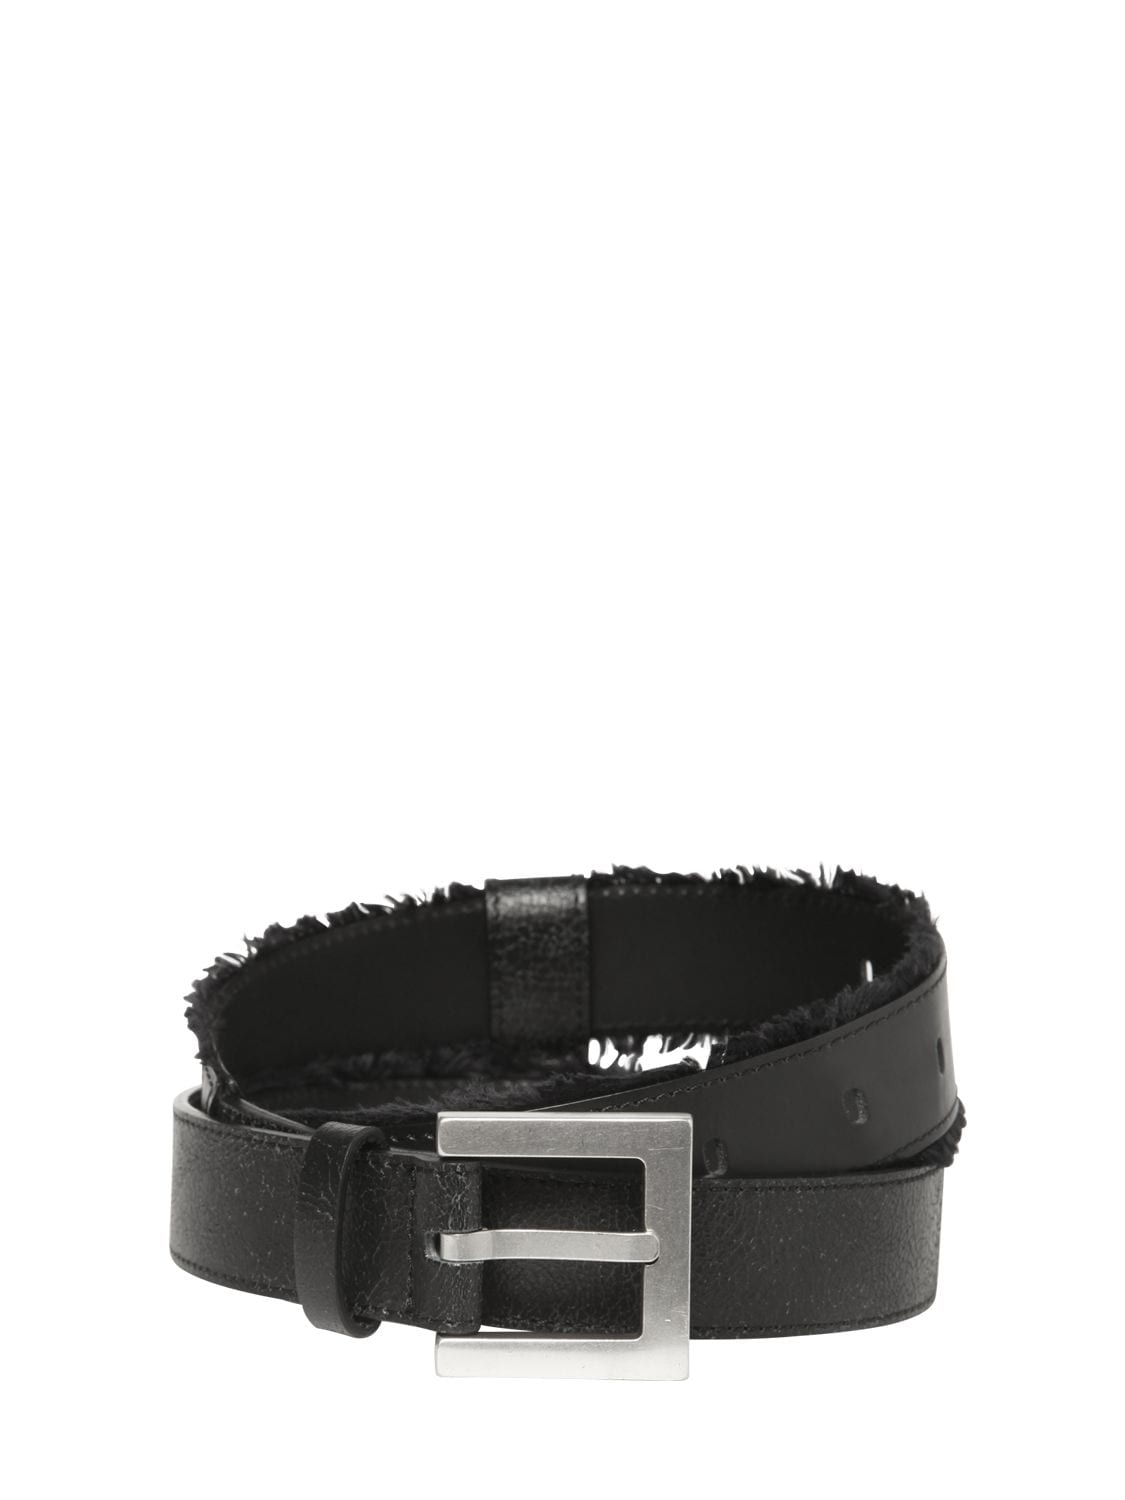 Ader Error 3cm Leather Belt W/ Fringe Details In Black